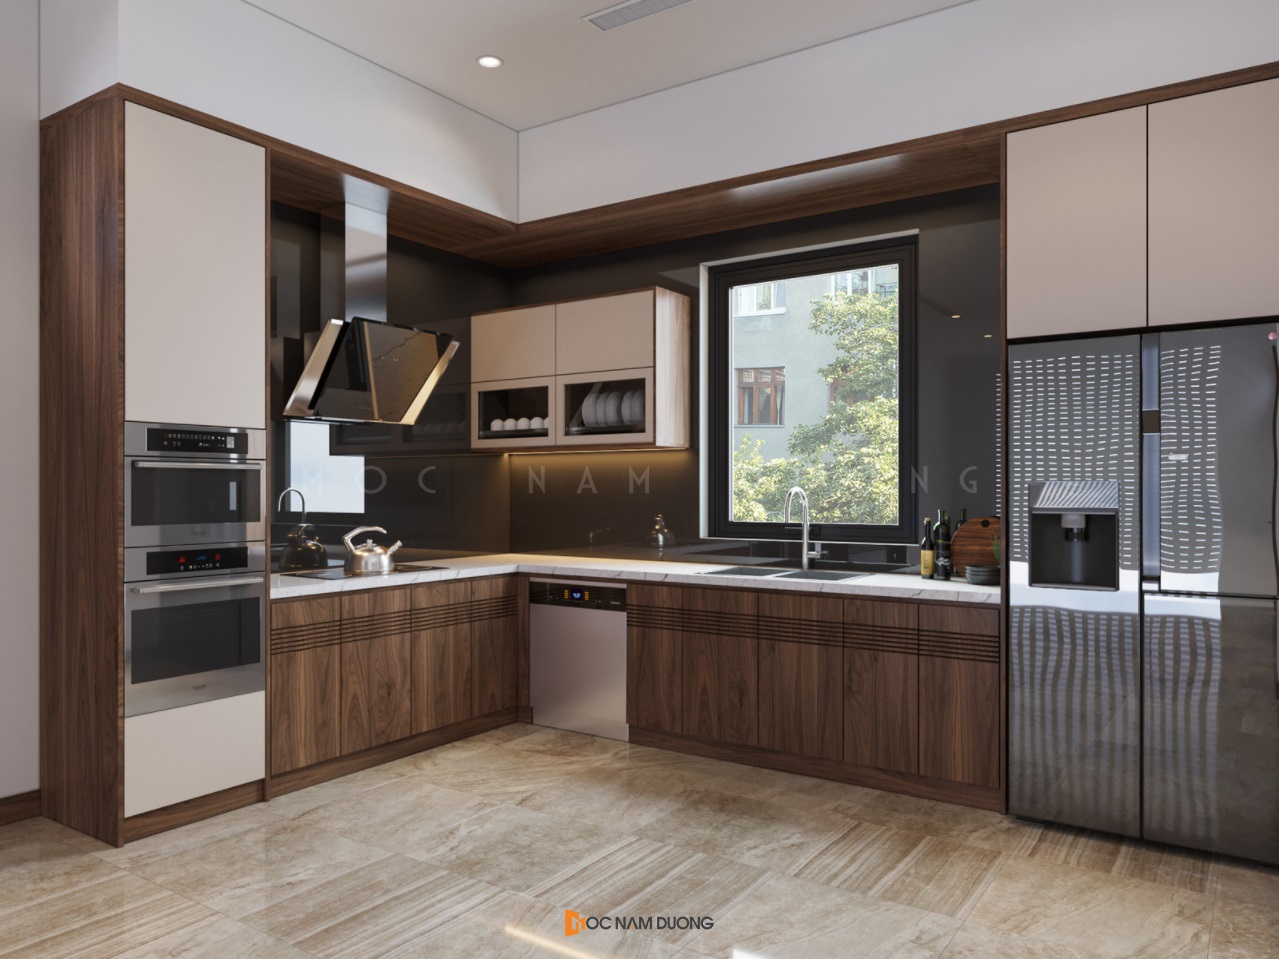 Thiết kế nội thất gỗ óc chó hiện đại hạng mục phòng bếp